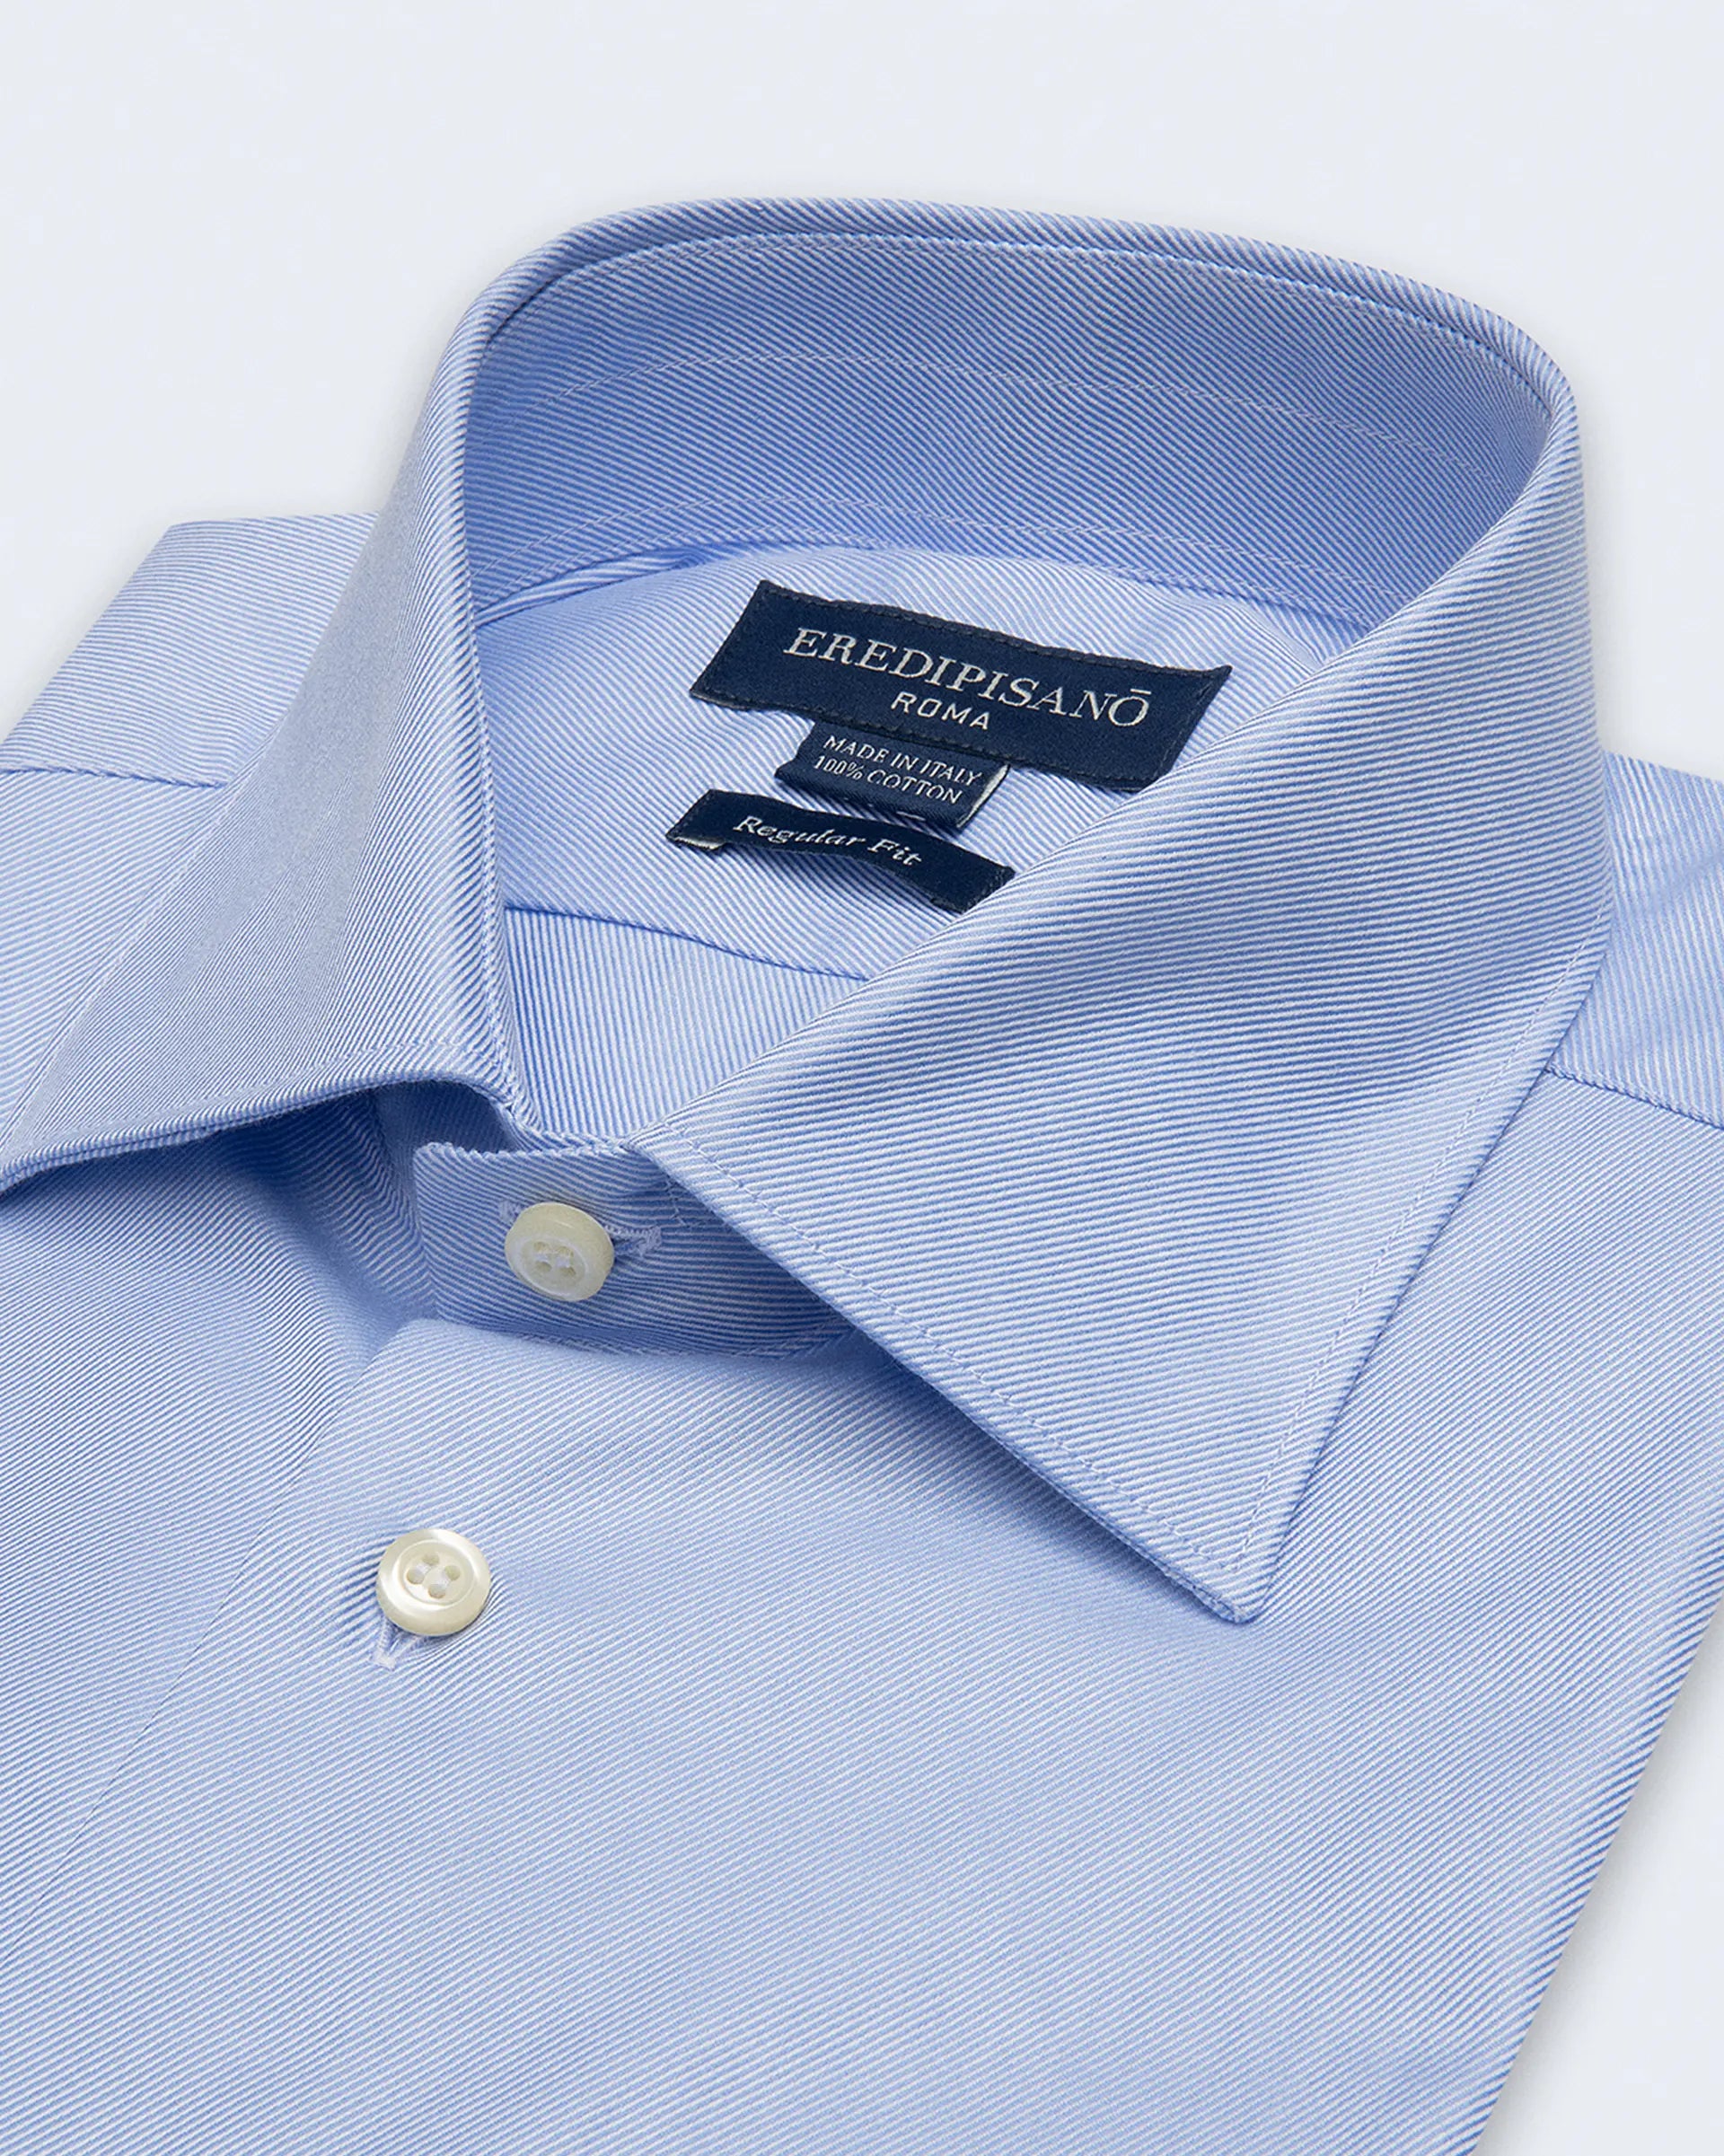 Regular fit light blue diagonal oxford shirt with Milan collar